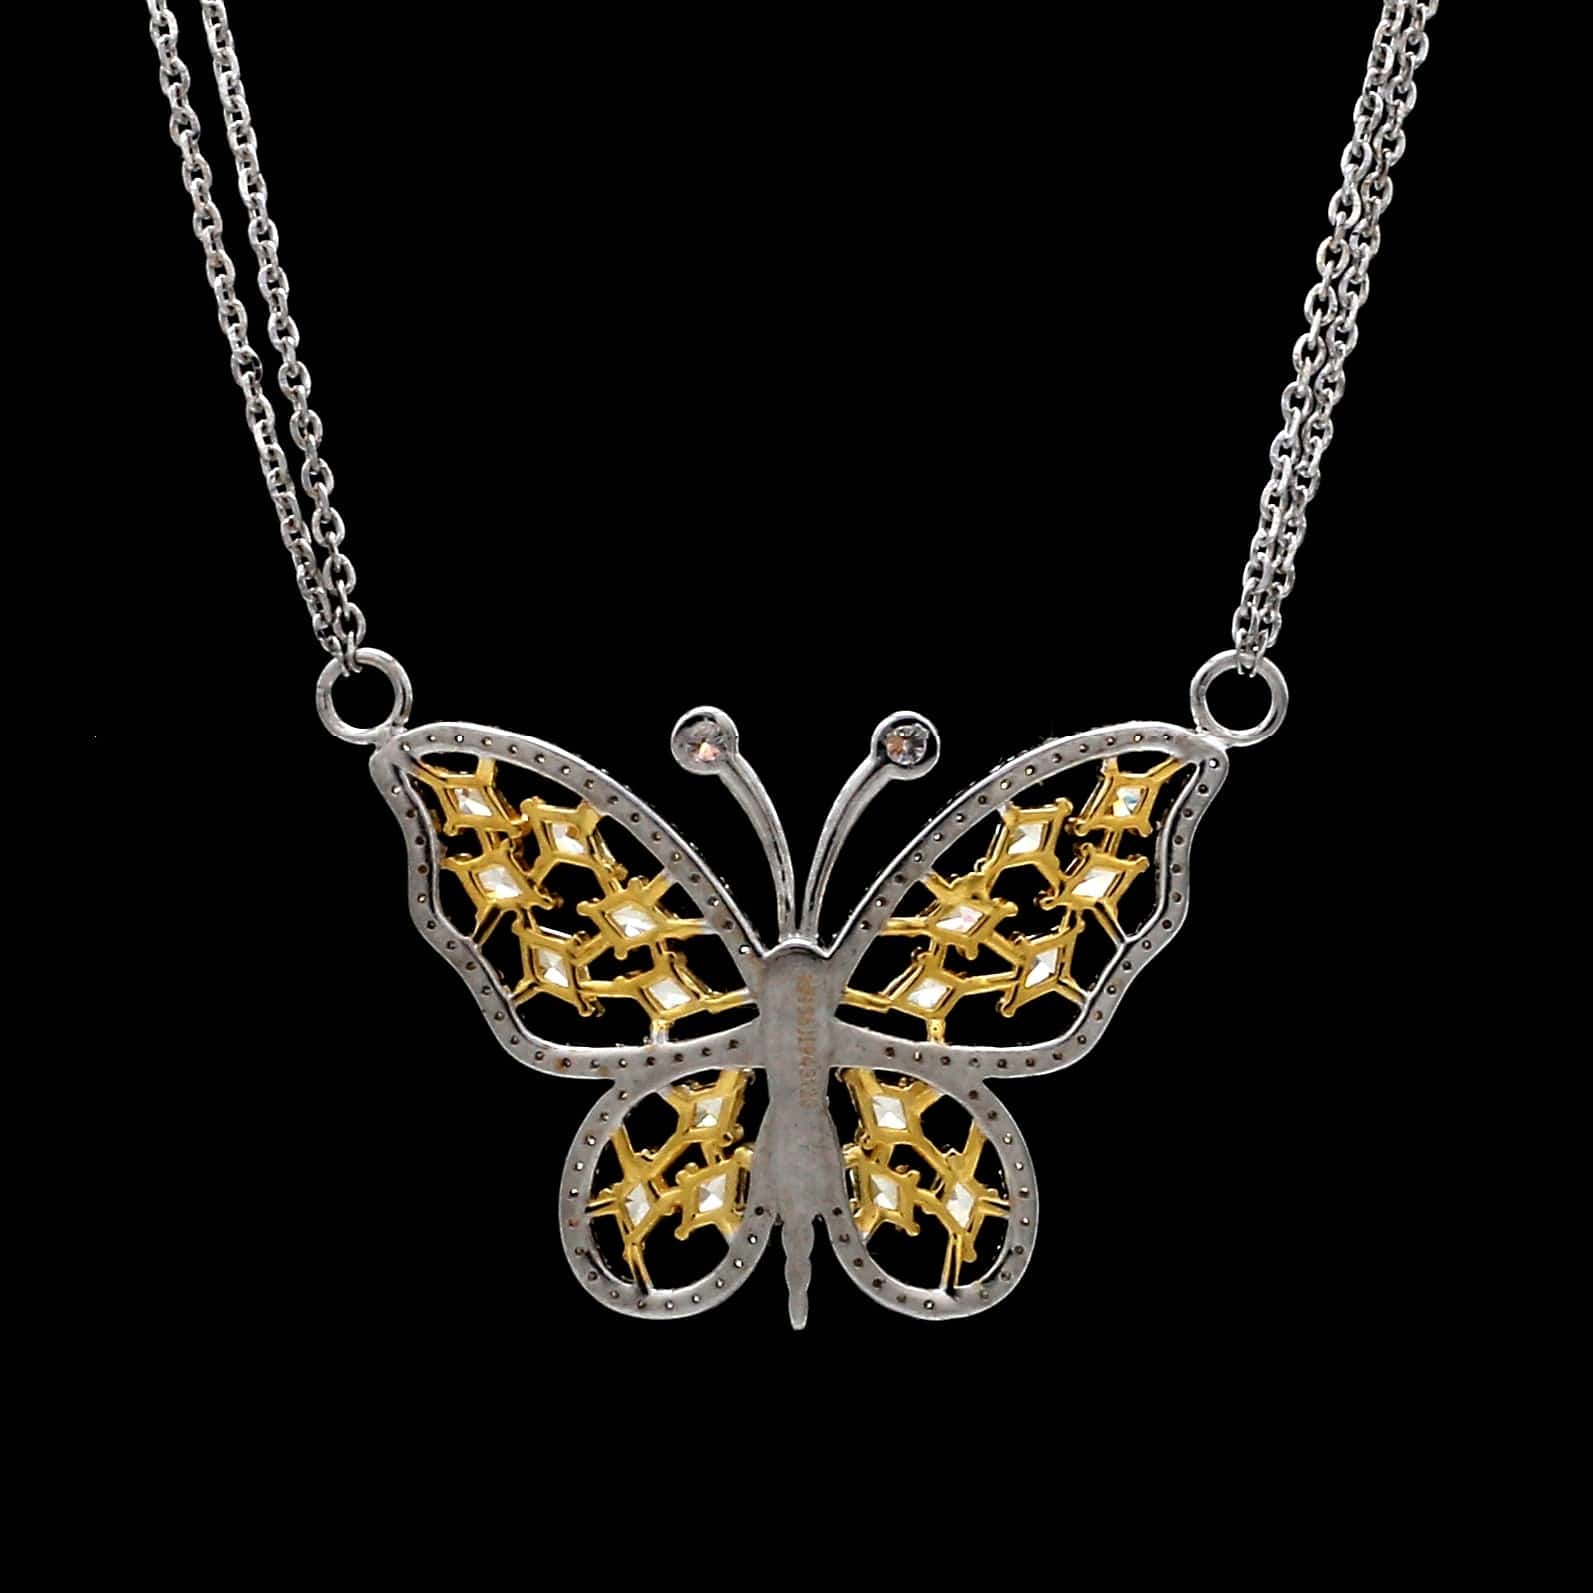 Diamond Butterfly Necklace, 18K White Gold - Nazar's & Co. Jewelers